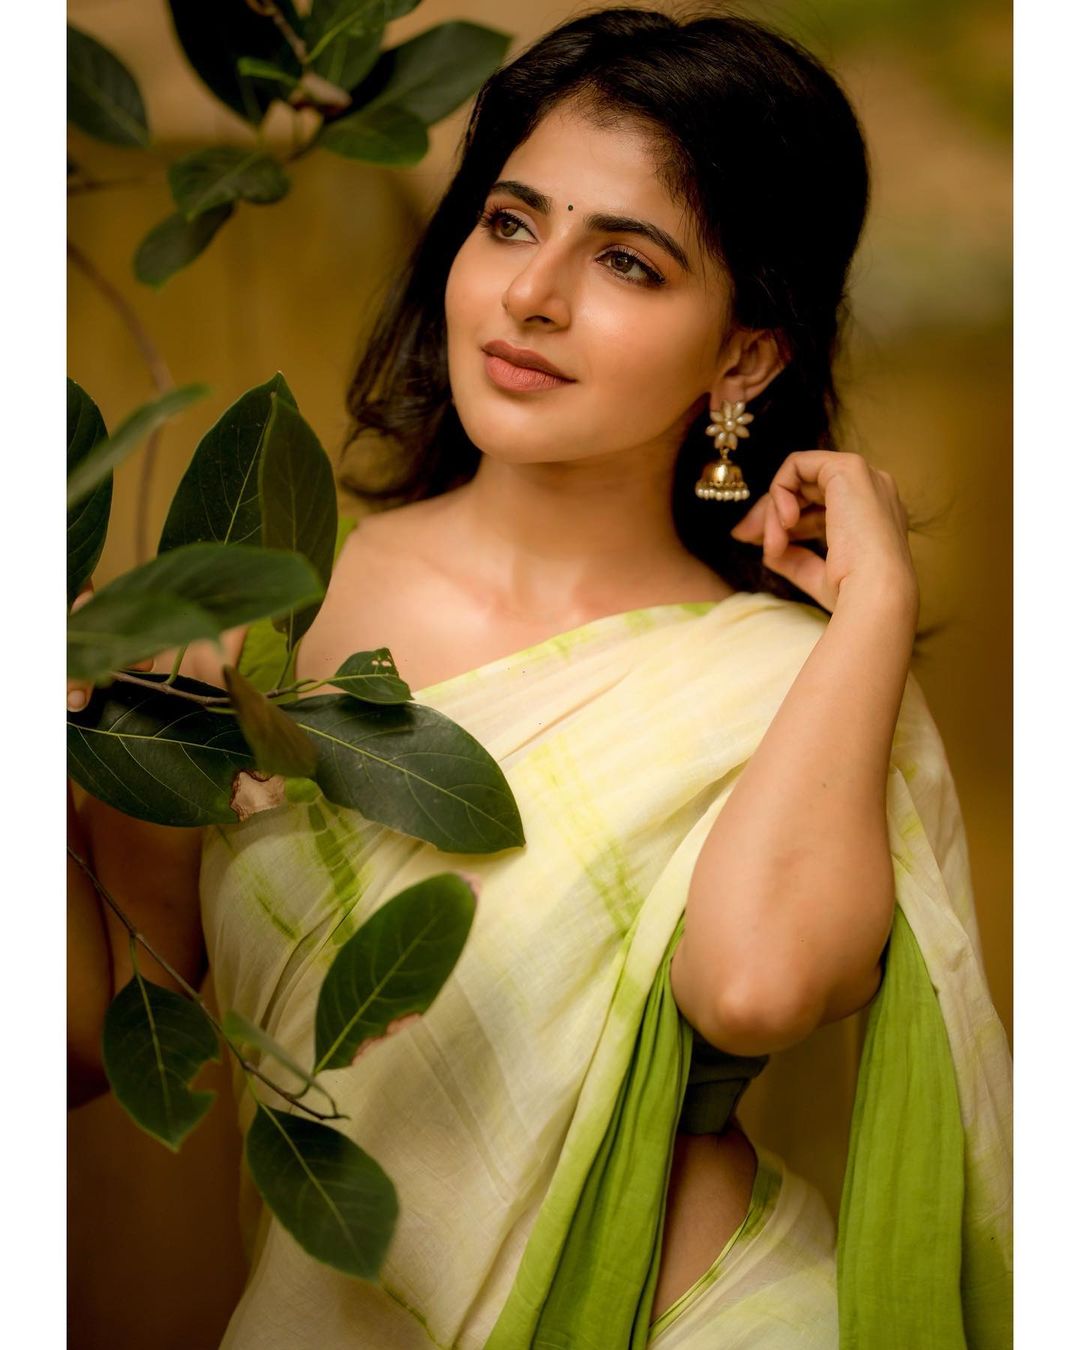  நடிகை ஐஸ்வர்யா மேனன் ( Image : Instagram @iswarya.menon)